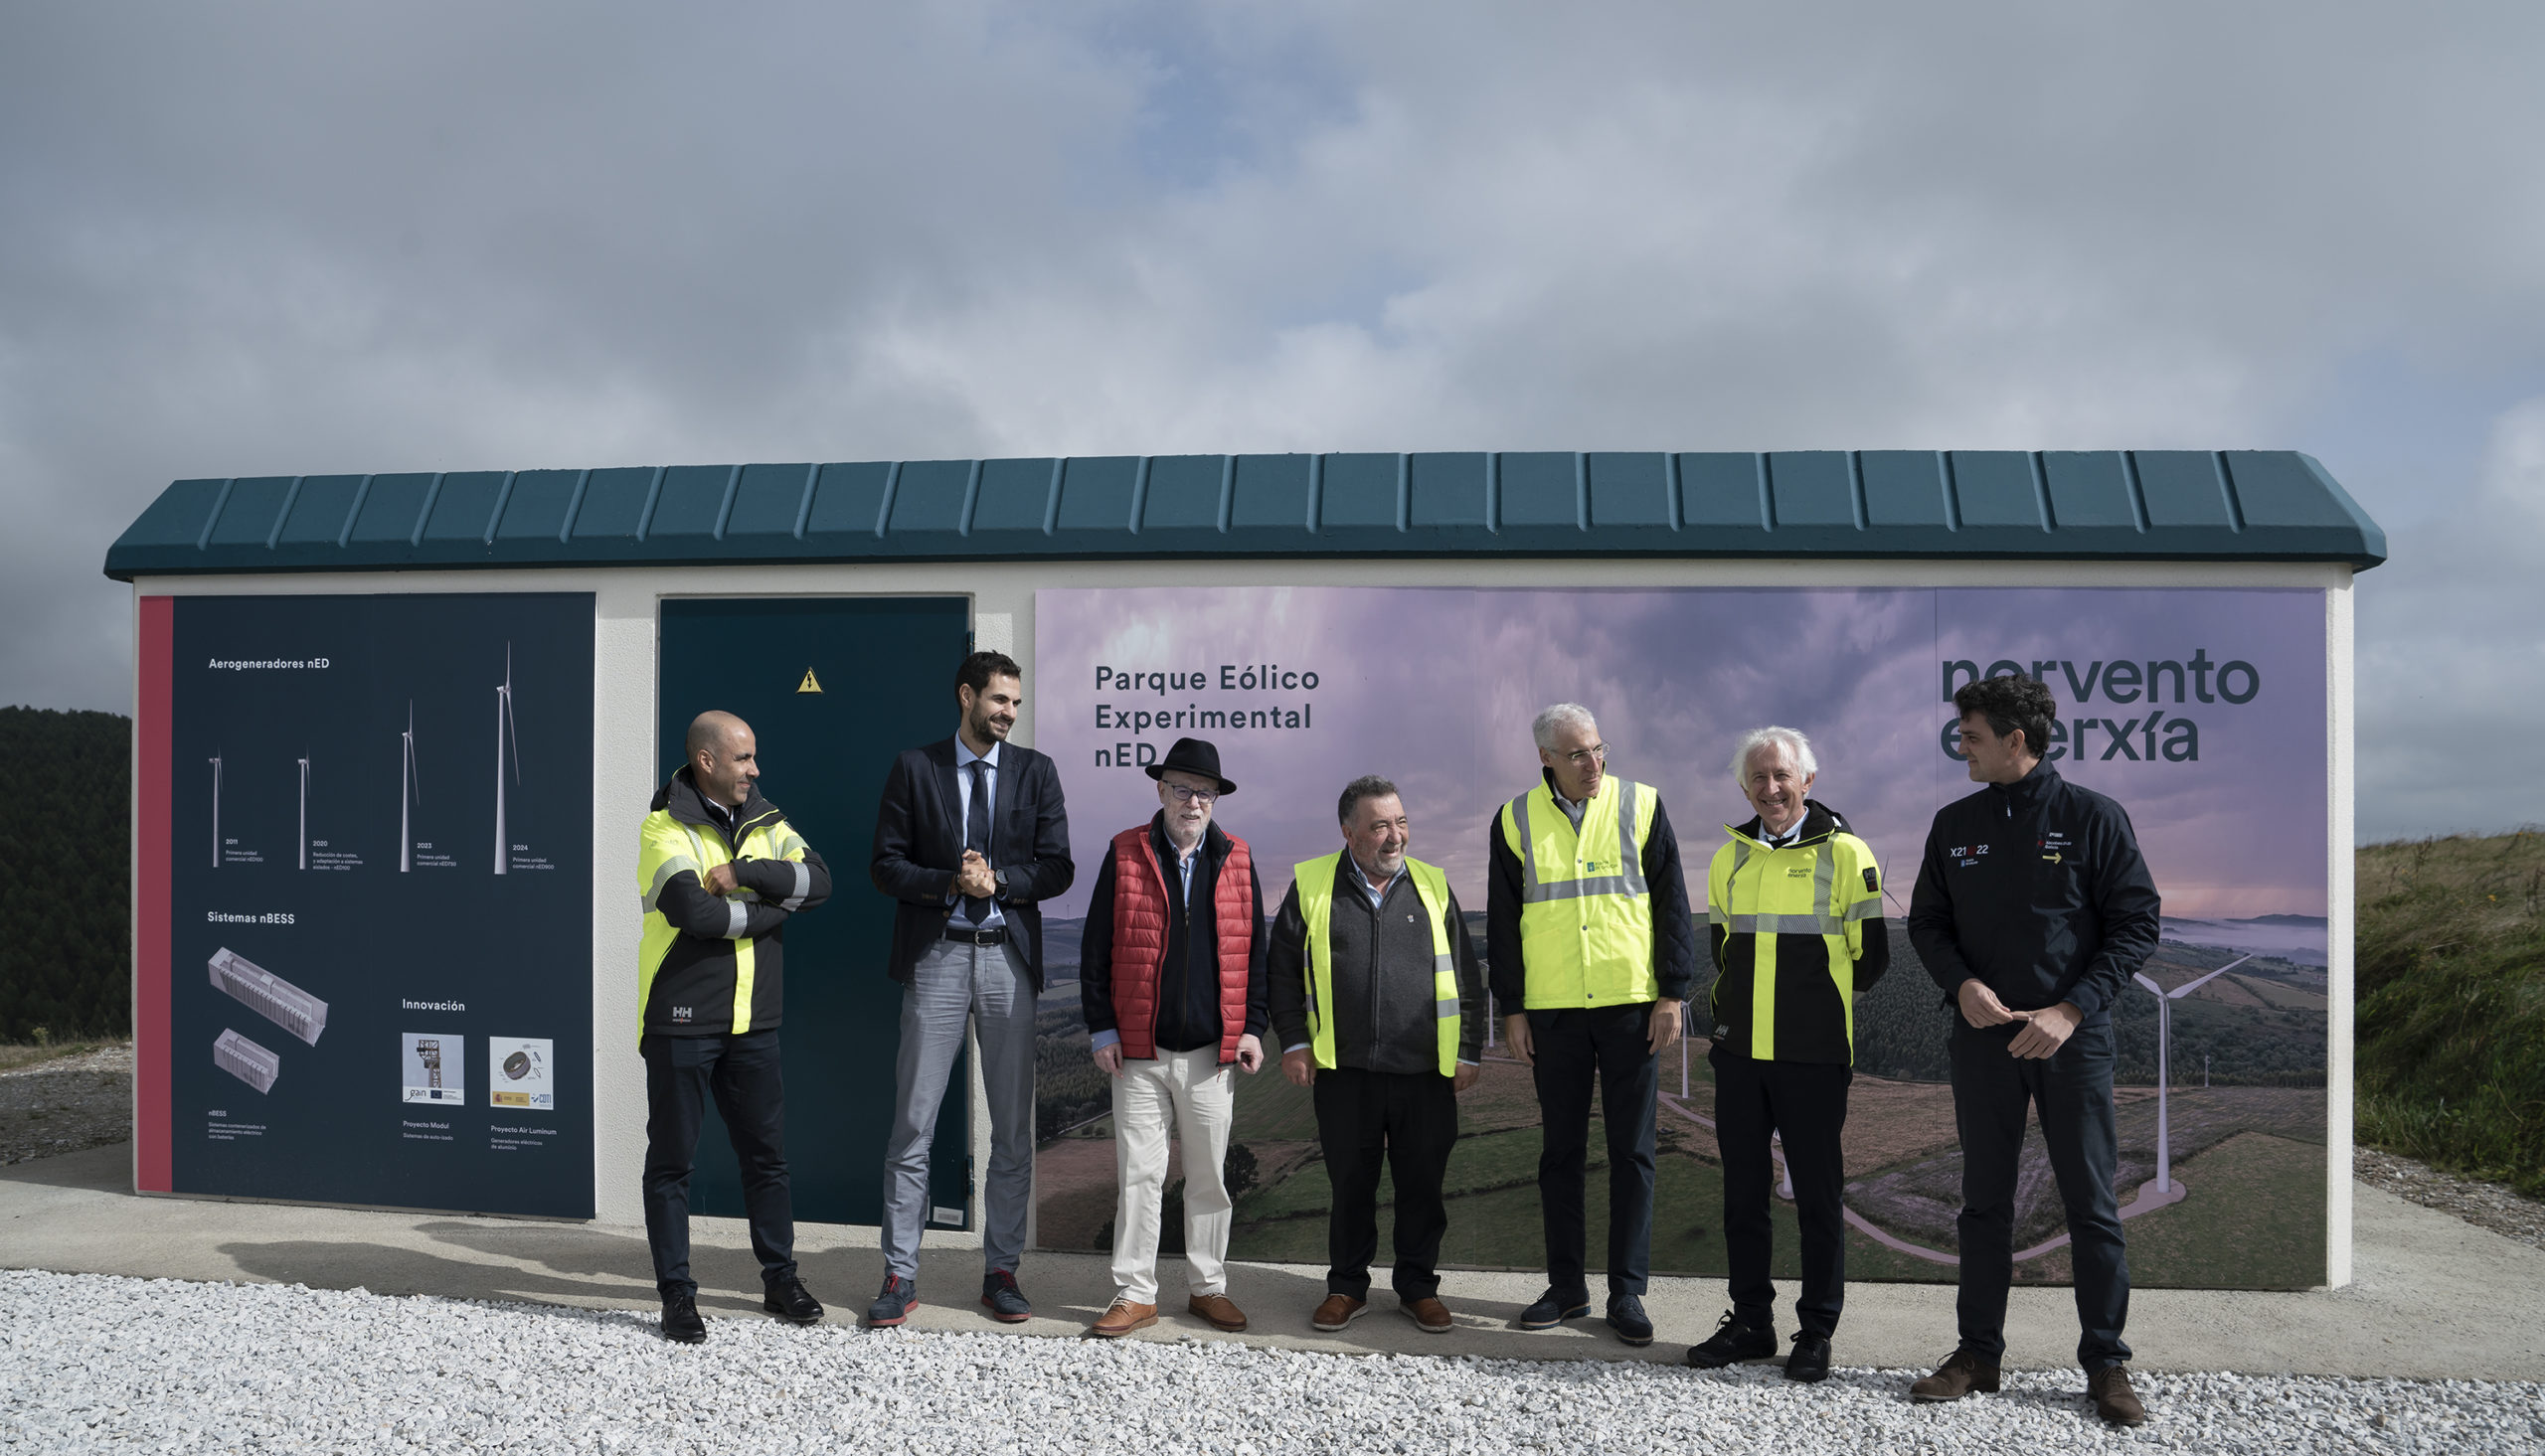 Norvento Enerxía inaugura el Parque Eólico Experimental nED ubicado en Pastoriza (Lugo)